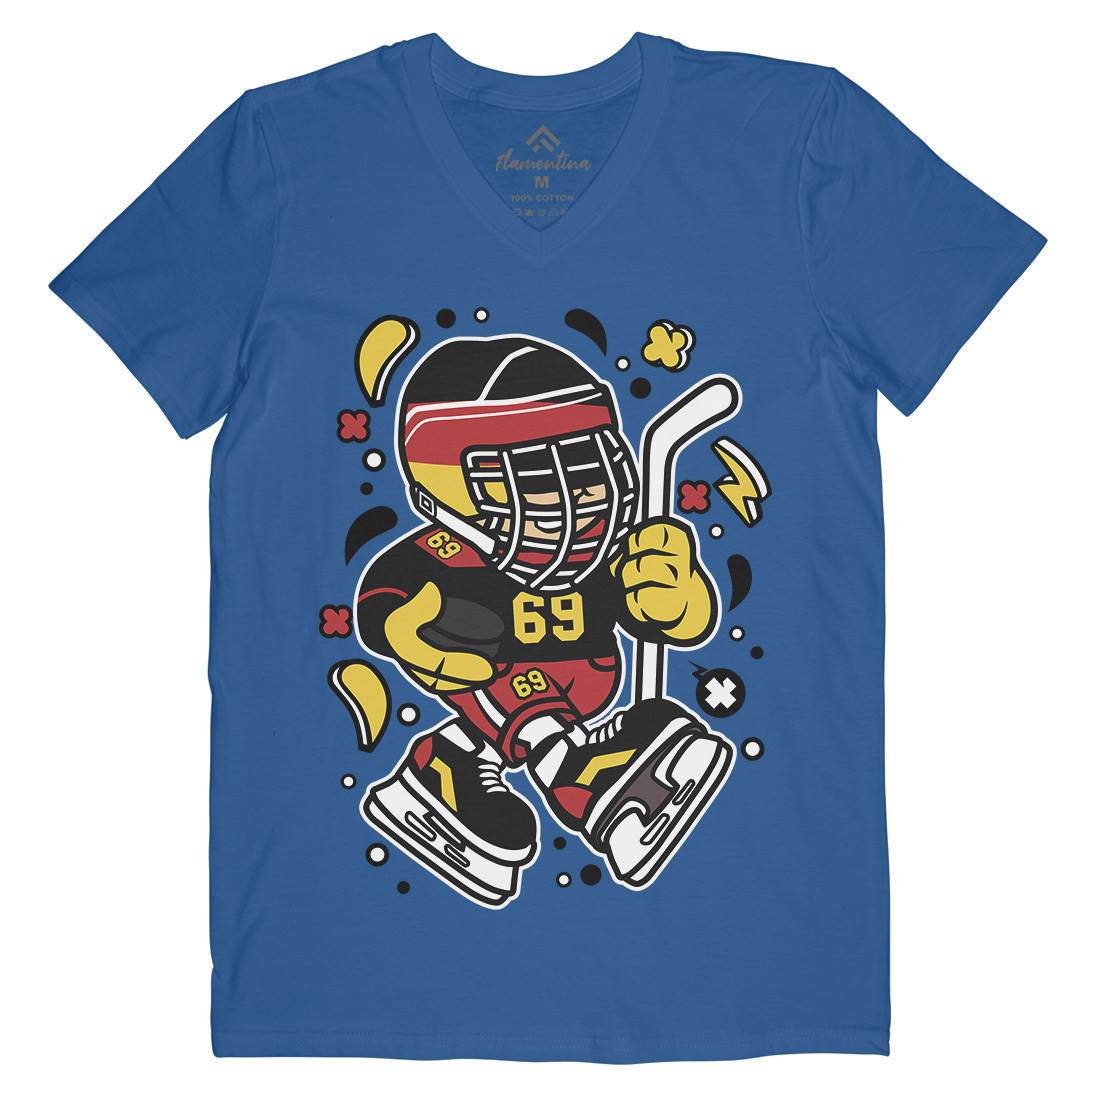 Germany Hockey Kid Mens V-Neck T-Shirt Sport C551